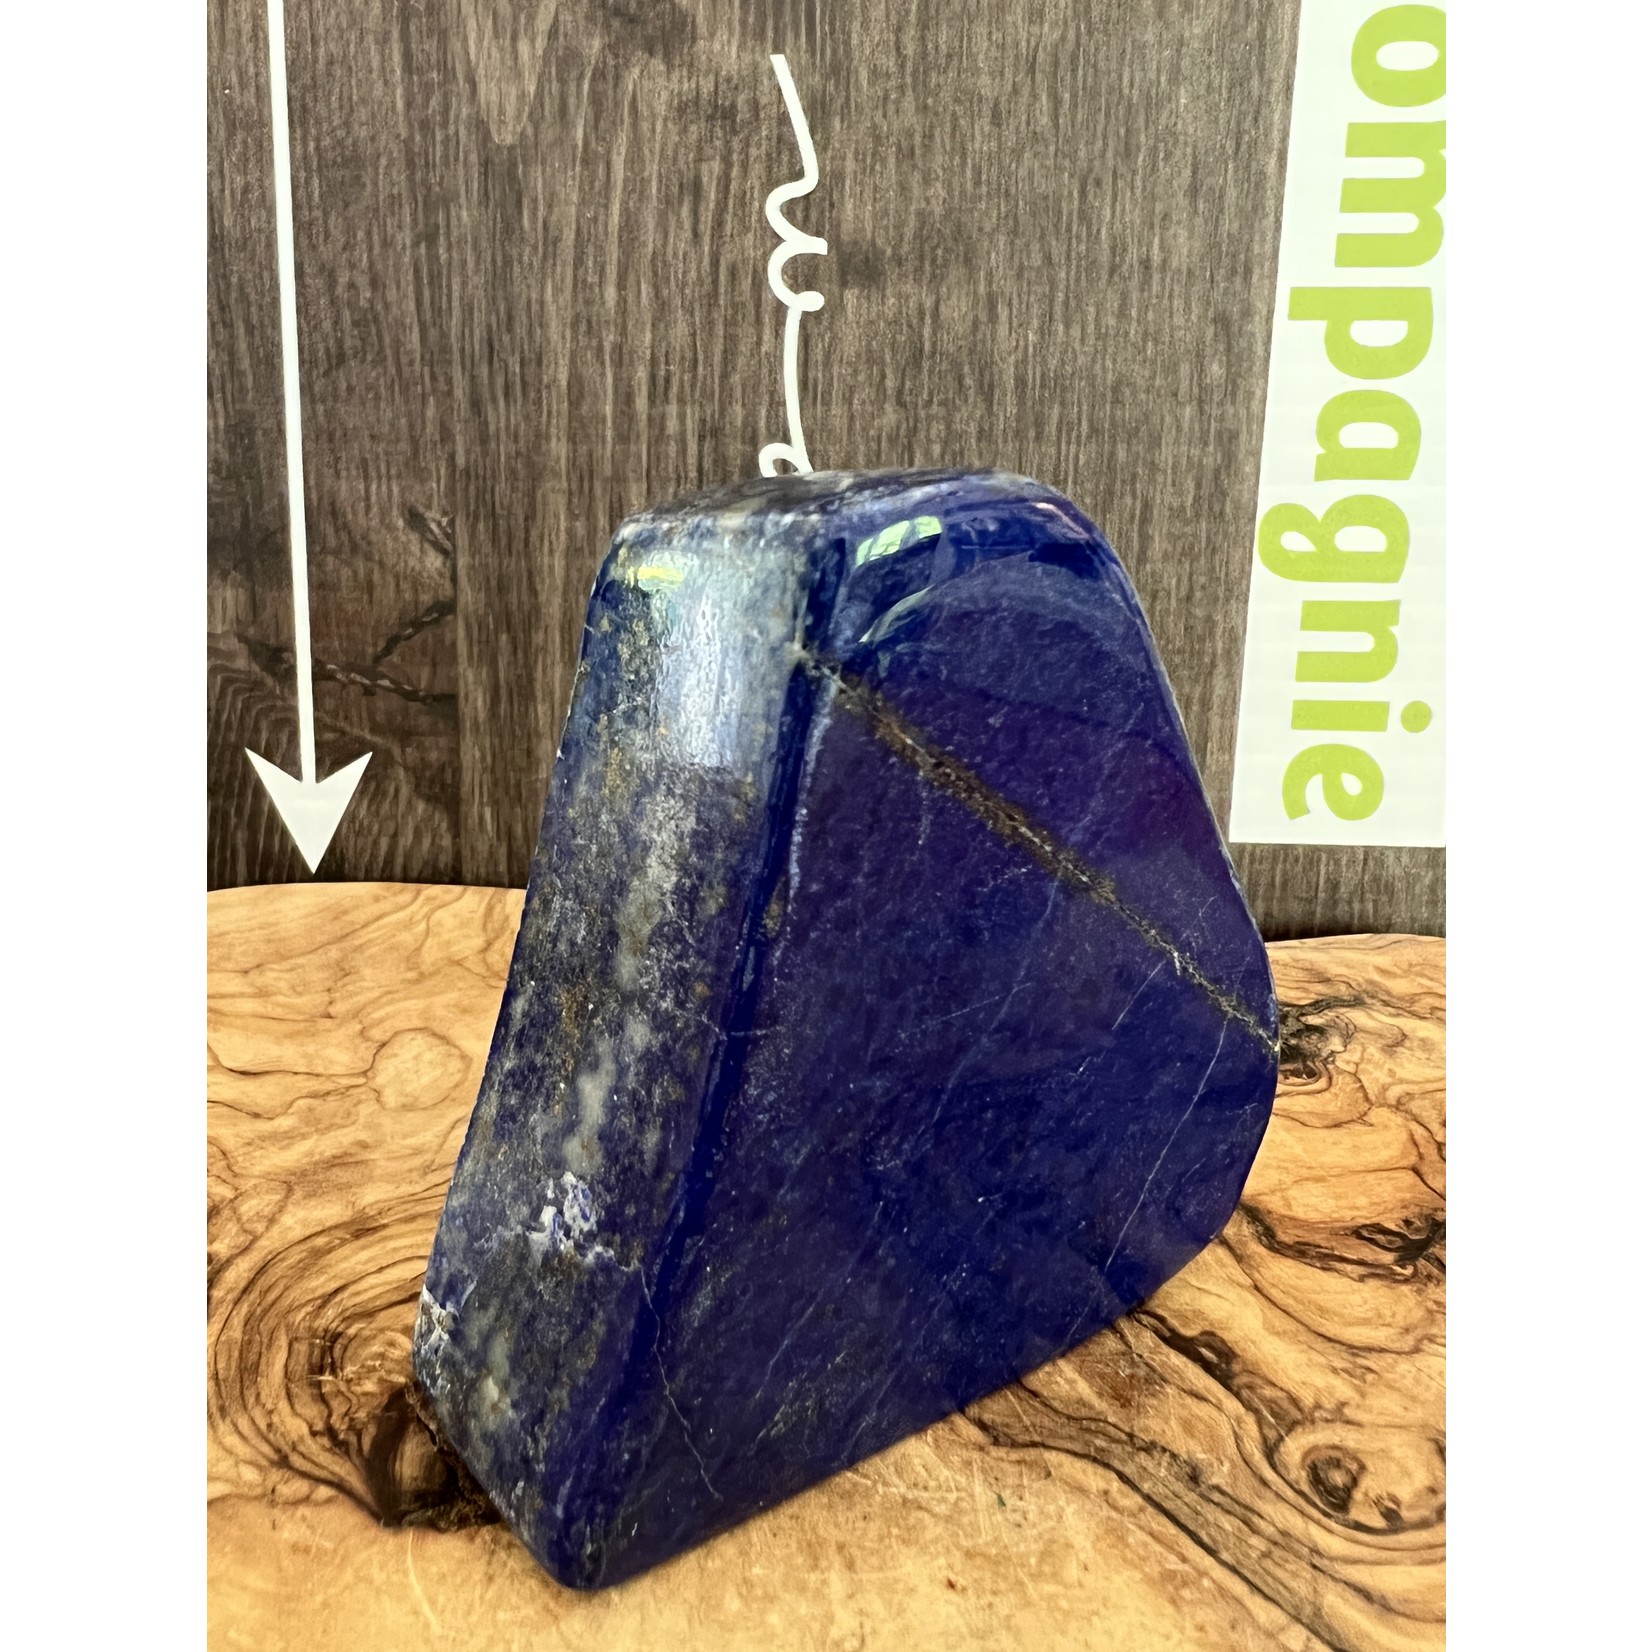 attrayante pièce de lapis lazuli forme libre, bénéfique pour le système respiratoire, les organes de nettoyage et le système nerveux